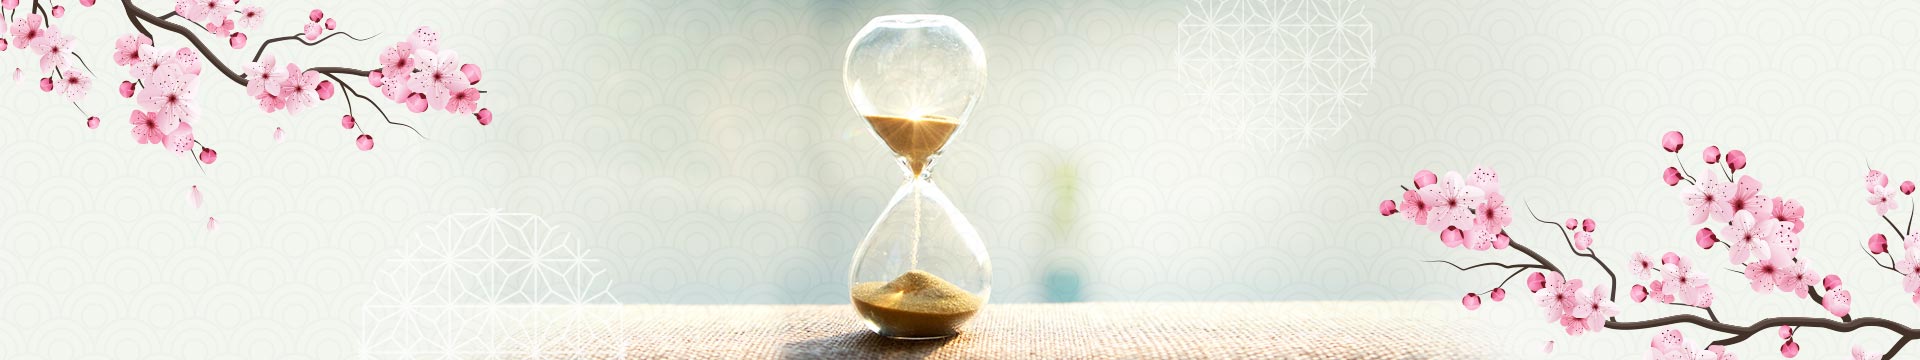 ธุรกิจญี่ปุ่นยุคใหม่ที่ให้ความสำคัญกับคำว่า “เวลาเป็นเงินเป็นทอง” 